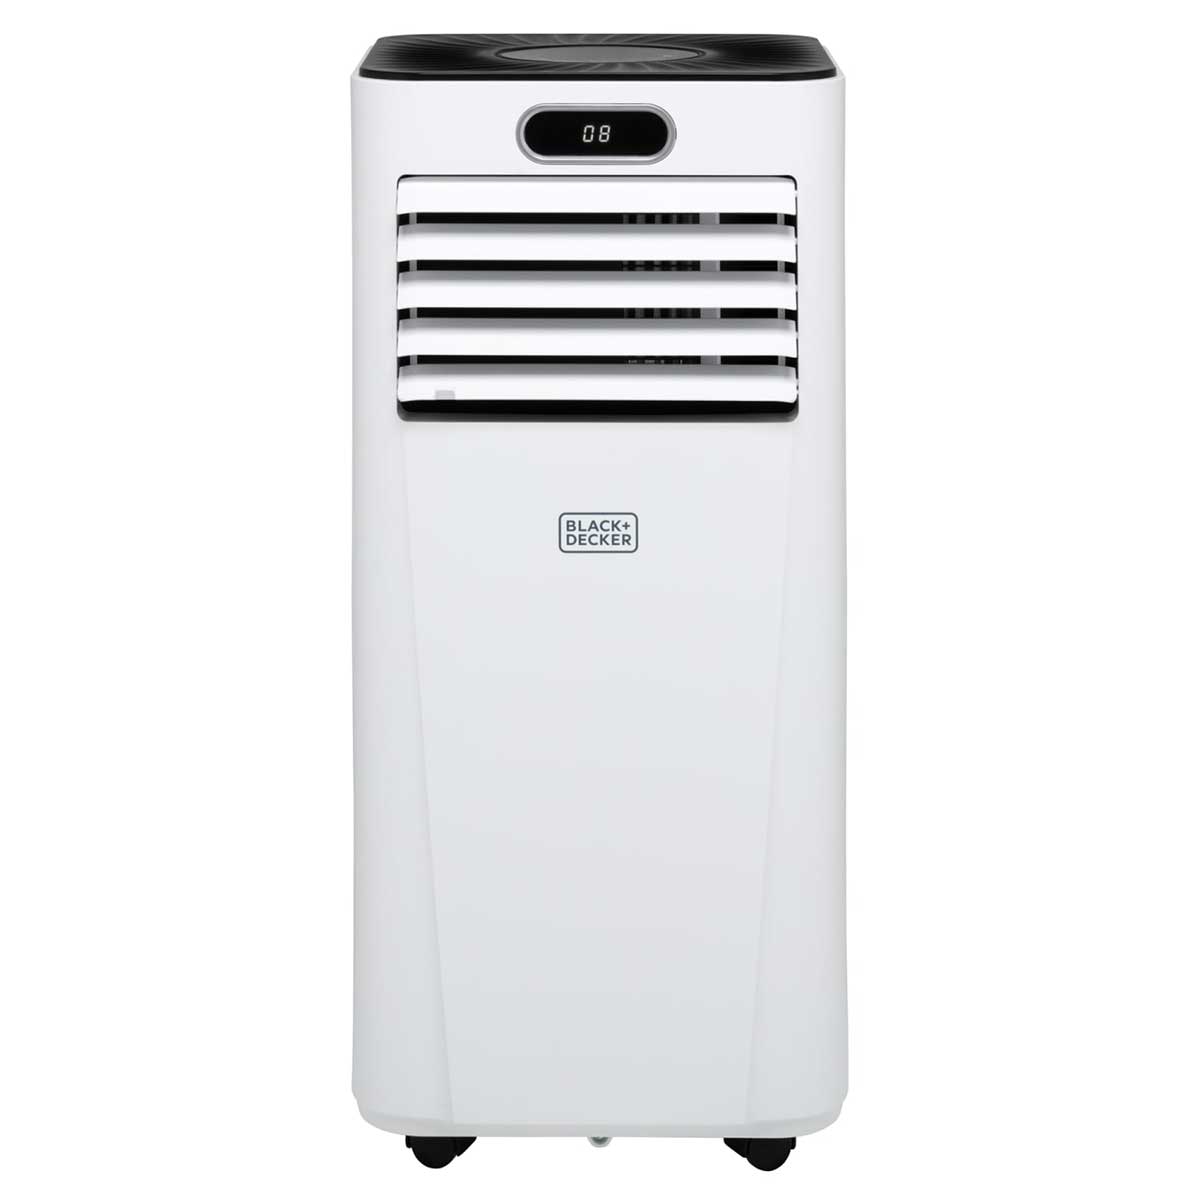 Black and Decker 5000BTU Smart Air Conditioner, white